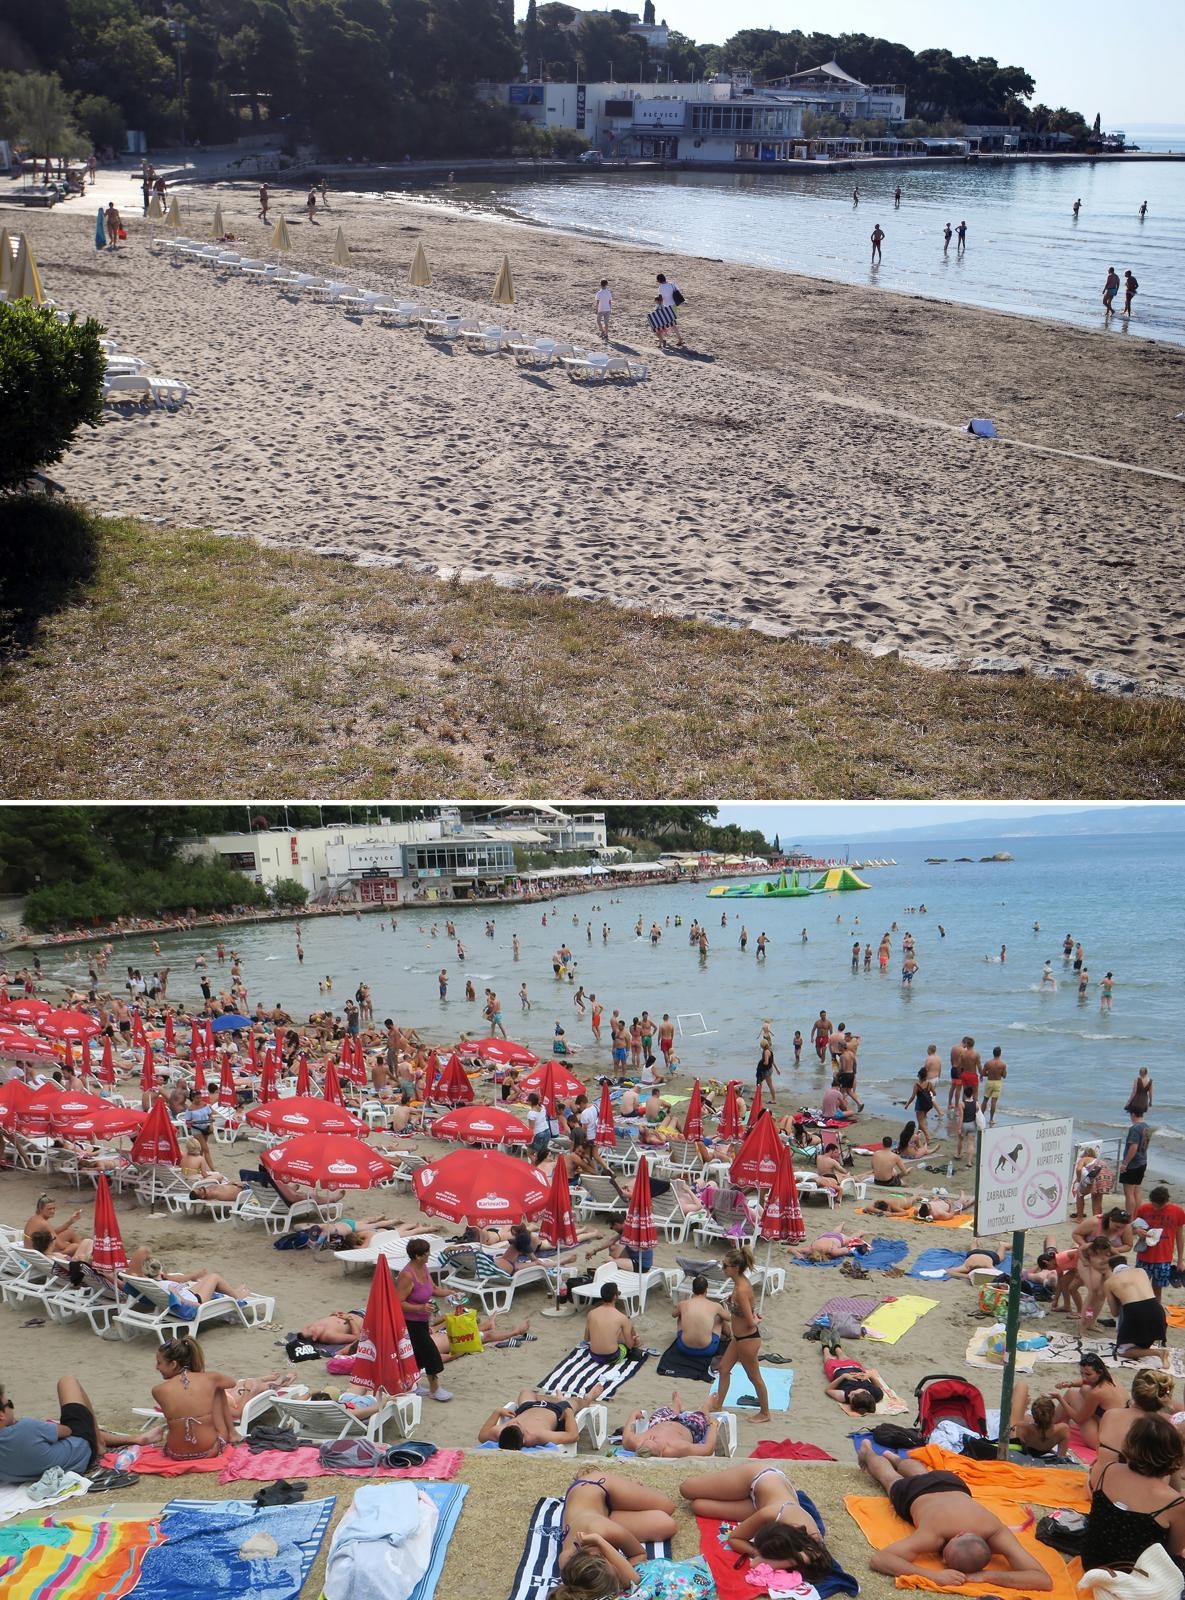 Podaci za lipanj također nisu bajni. U Hrvatsku je došlo 892 tisuće turista, koji su ostvarili 4,8 milijuna noćenja, što je 32 posto od rezultata iz lipnja prošle godine. Plaža u Splitu